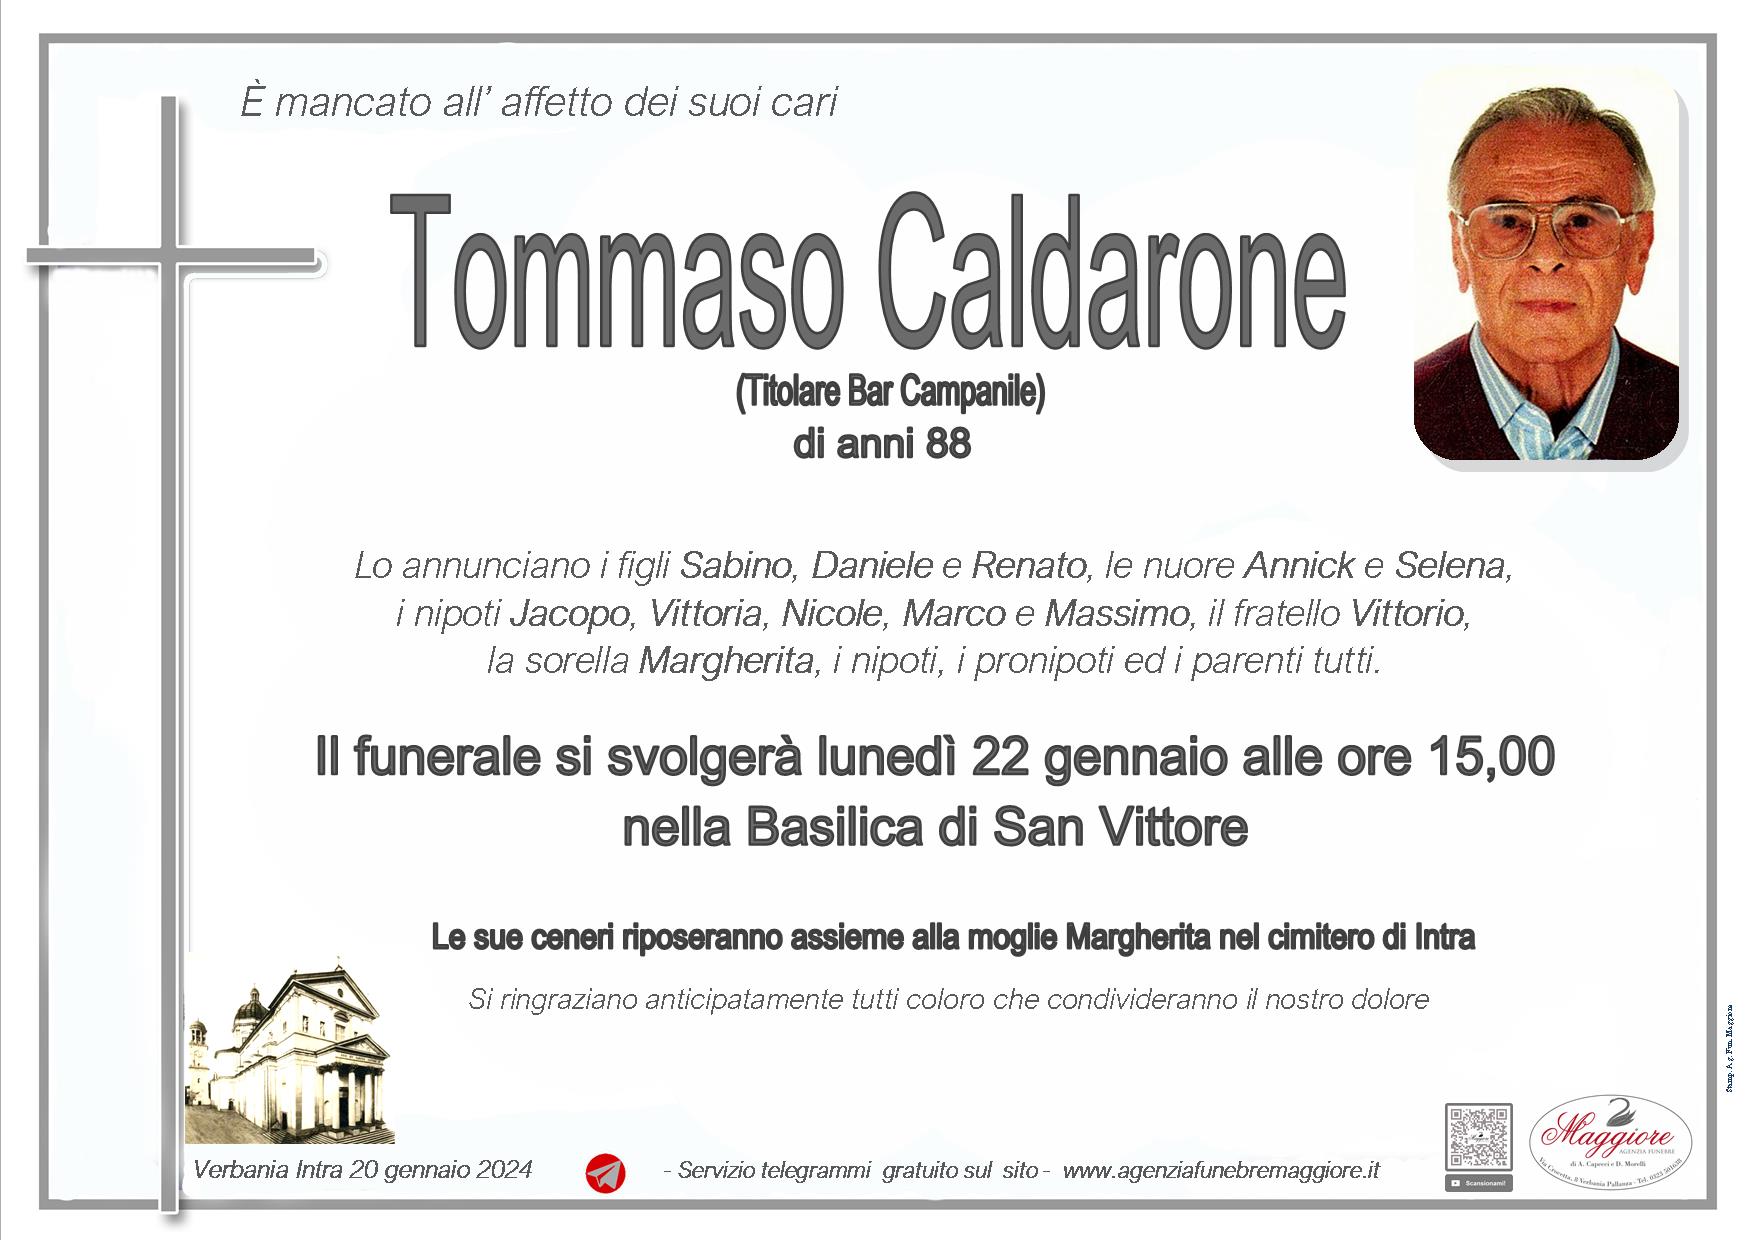 Tommaso Caldarone